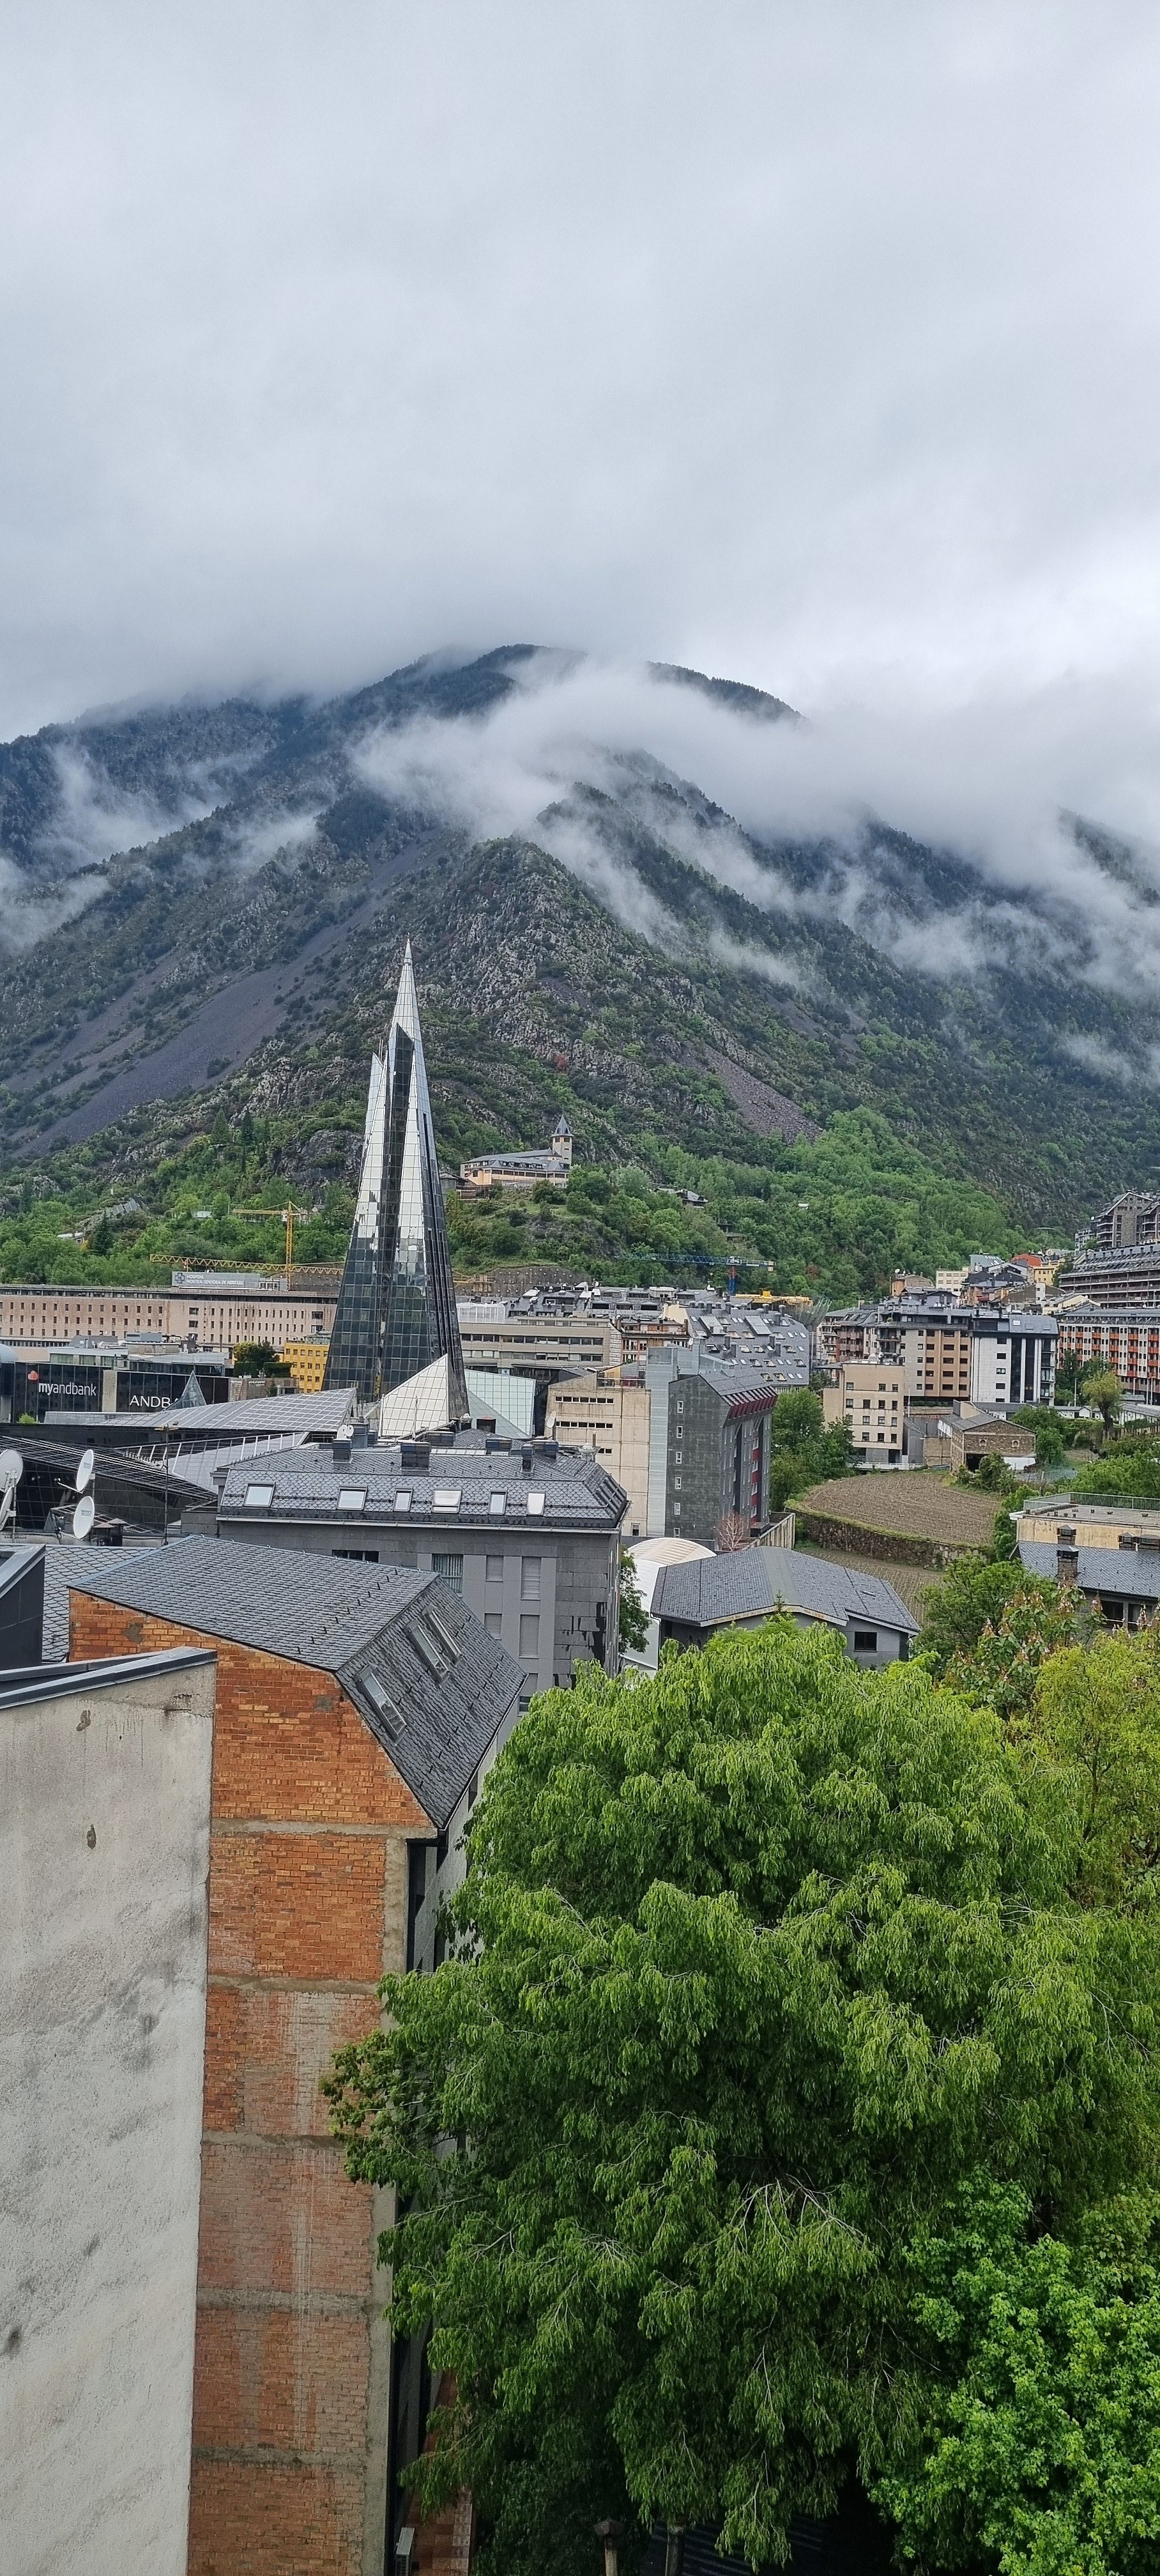 Andorra är en ganska episk plats för trampers, även i regnigare väder